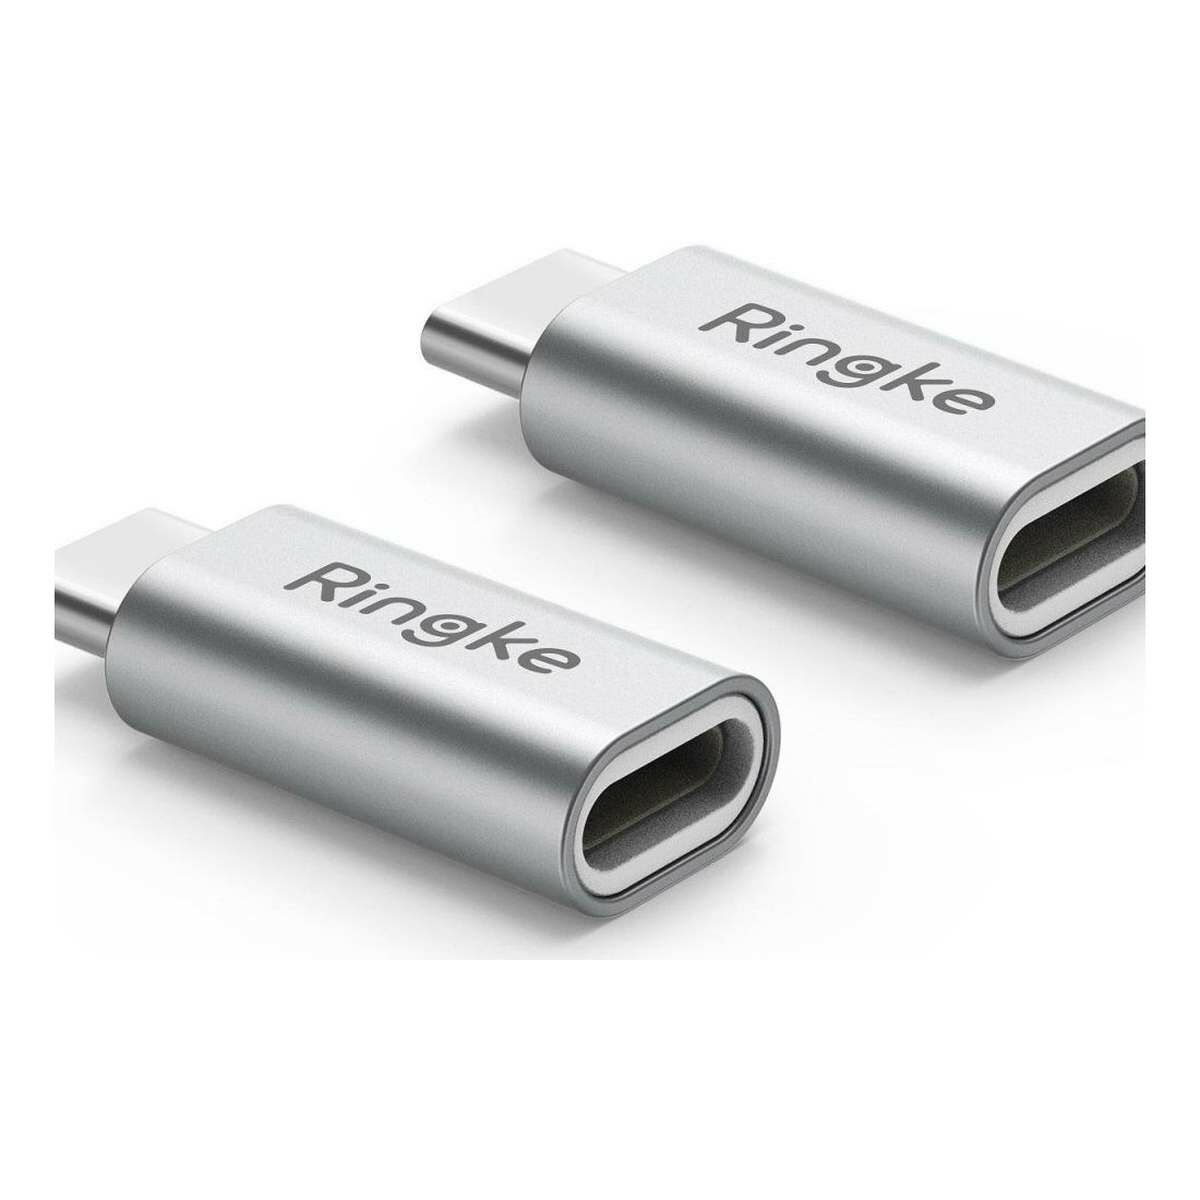 Kép 2/4 - Ringke Lightning - USB-C adapter (2db) ezüst